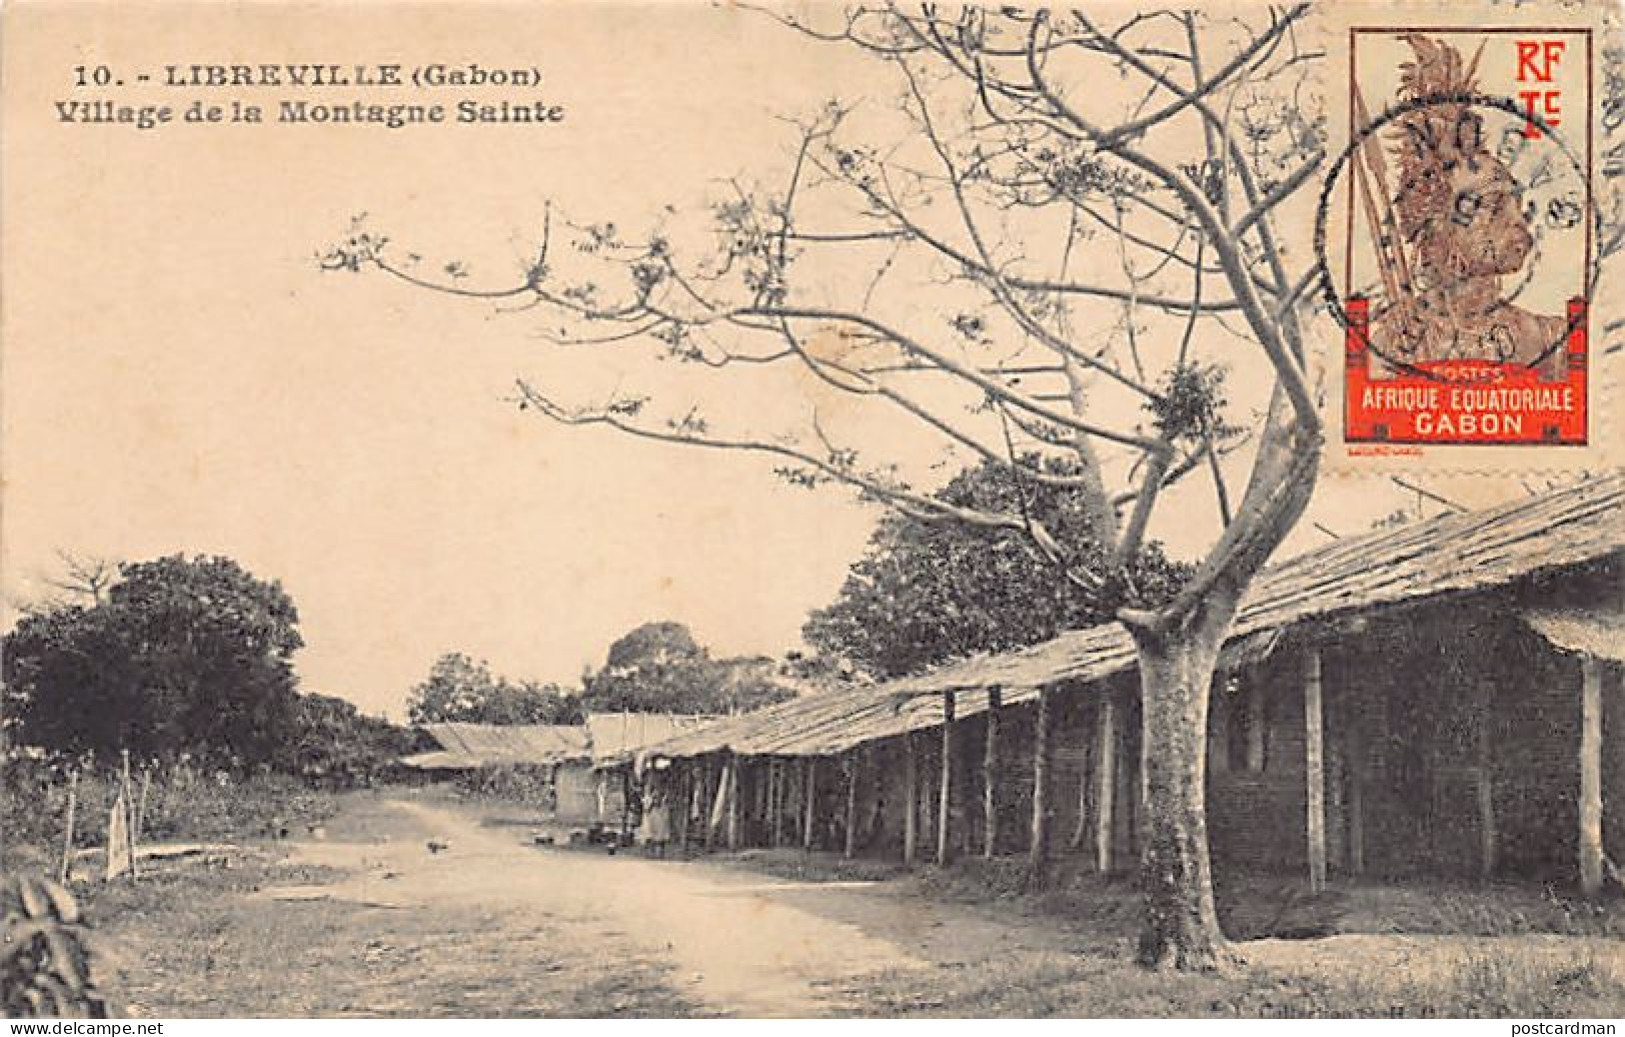 Gabon - LIBREVILLE - Village De La Montagne Sainte - Ed. S.H.O. - G.P. 10 - Gabon